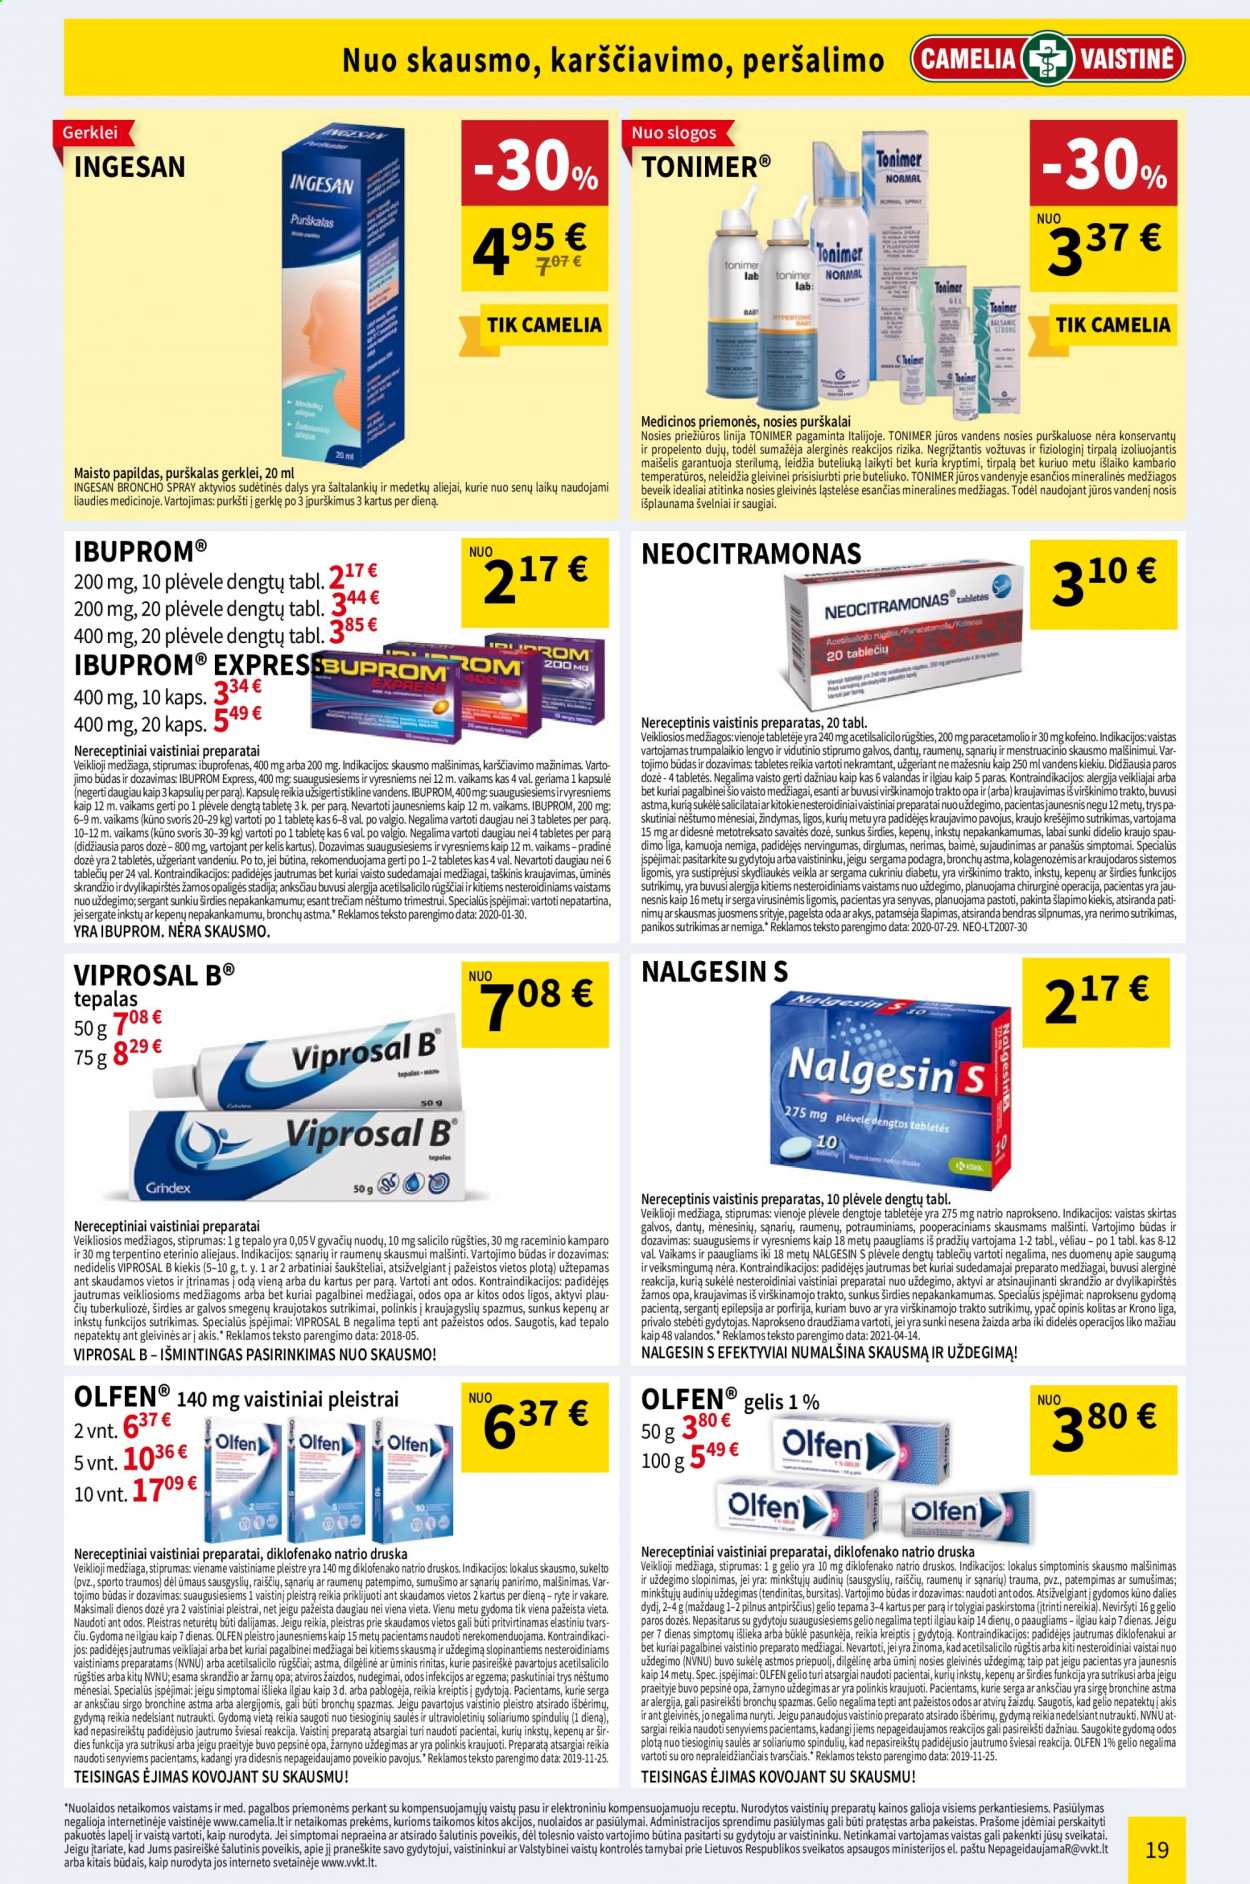 thumbnail - „CAMELIA Vaistinė“ leidinys - 2021 05 01 - 2021 05 31 - Išpardavimų produktai - Ibuprom, Nalgesin, Olfen, pleistrai. 19 puslapis.